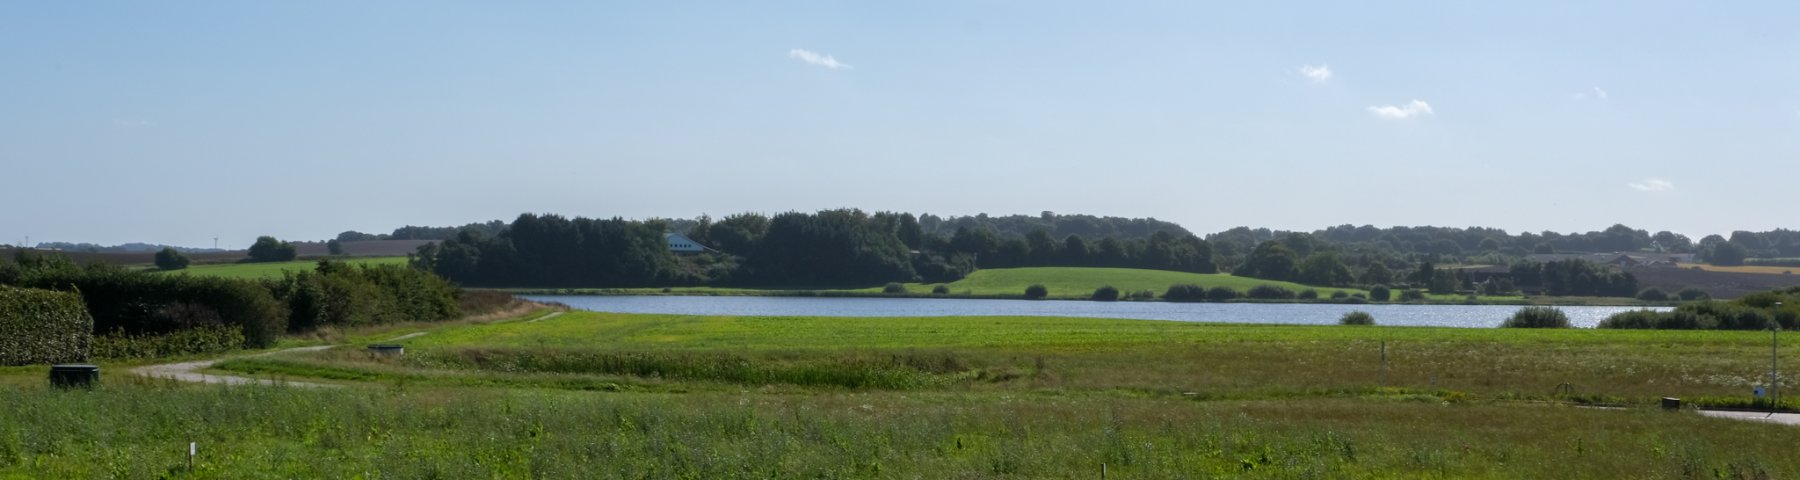 Udsigt over landskabet ved Søvænget set fra landevejen mod søen